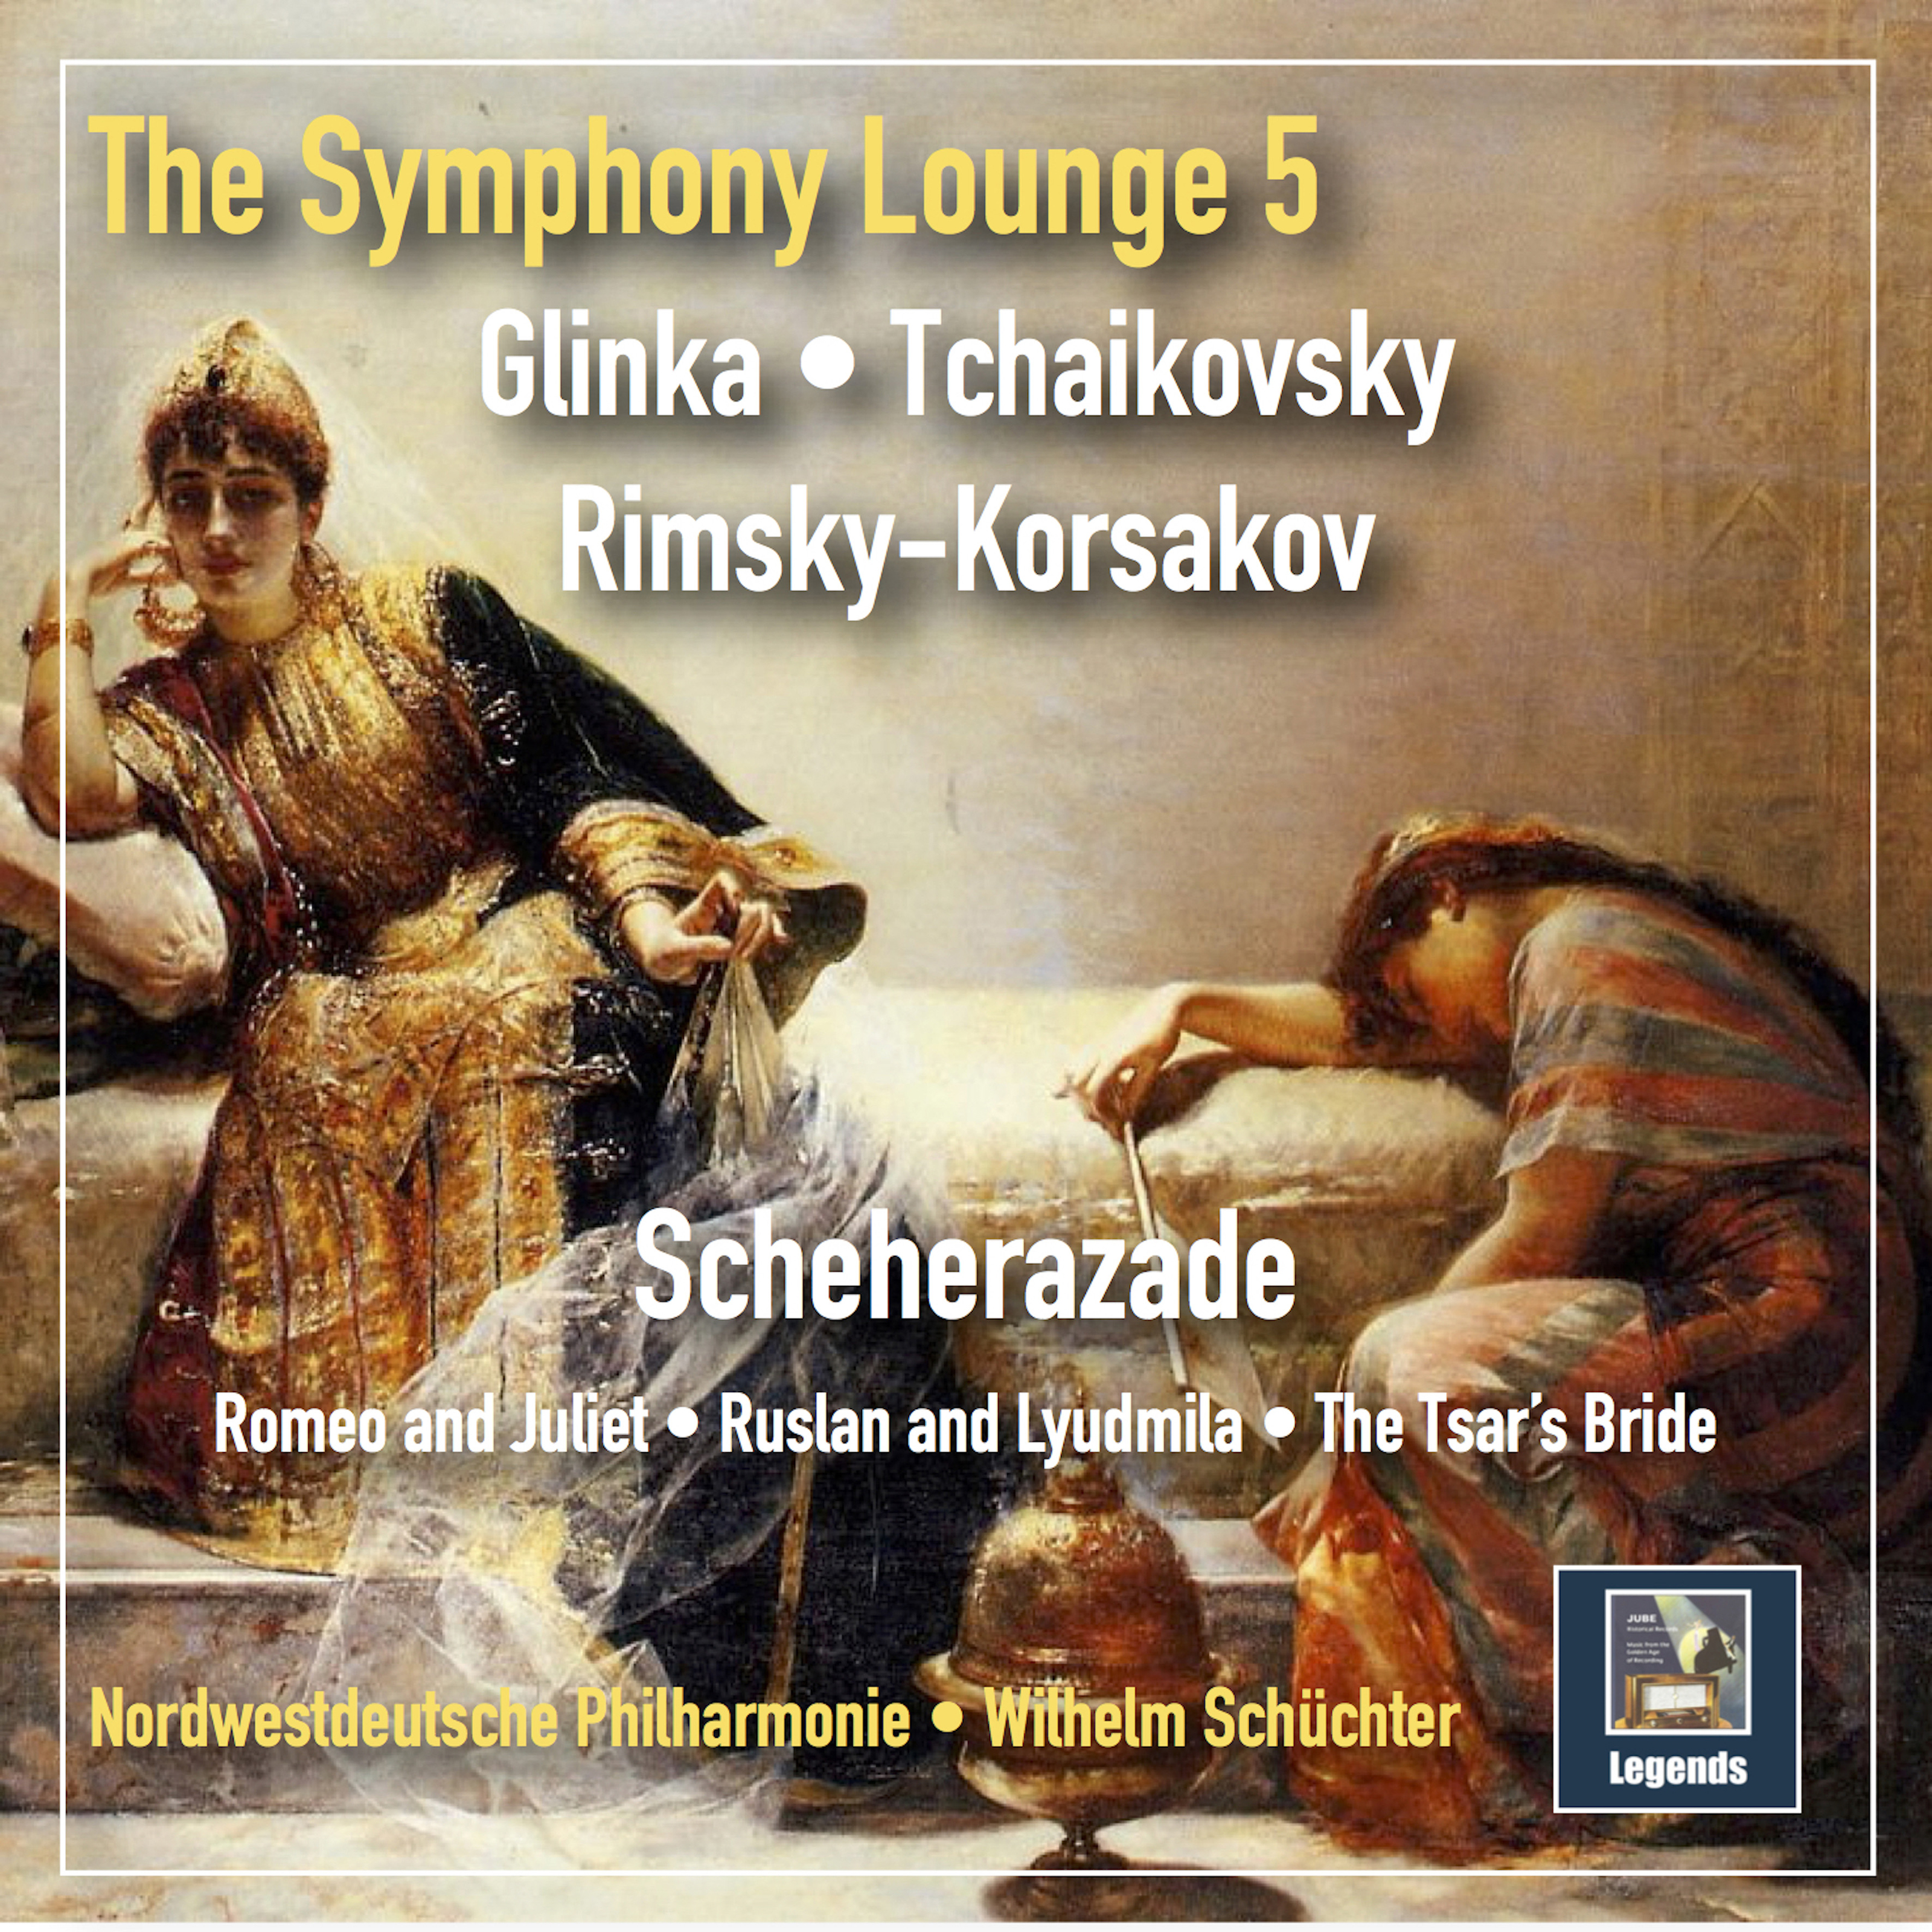 The Symphony Lounge, Vol. 5: Scheherazade  Glinka, Tchaikovsky  RimskyKorsakov Remastered 2018